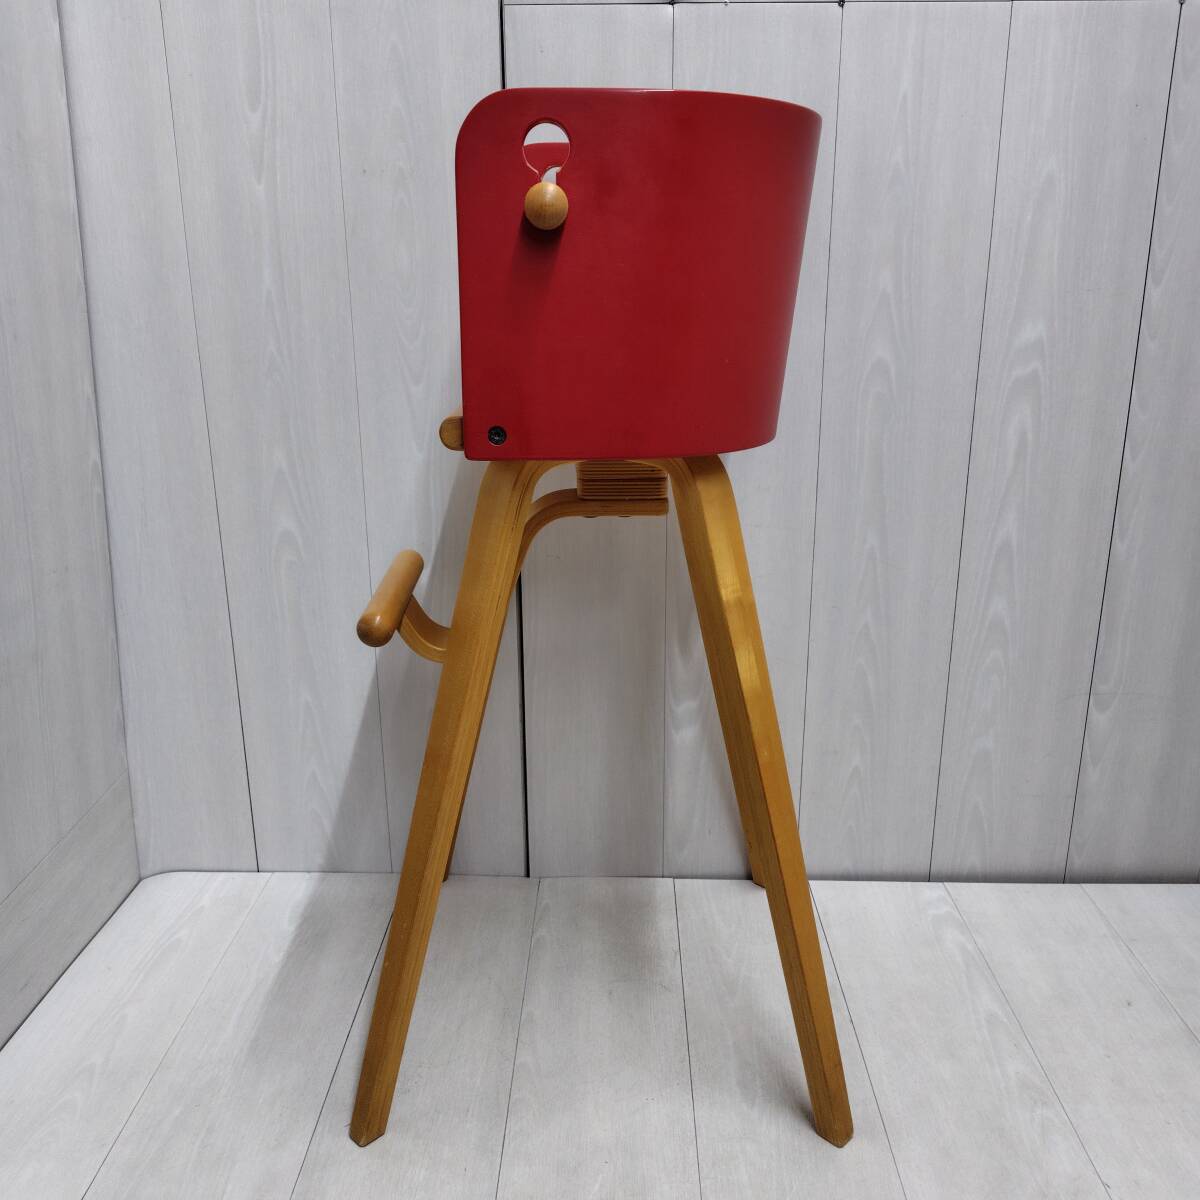 [ free shipping ]* sdi fantasia Caro ta chair red red Carota-chair baby chair dining chair child Sasaki design high chair 